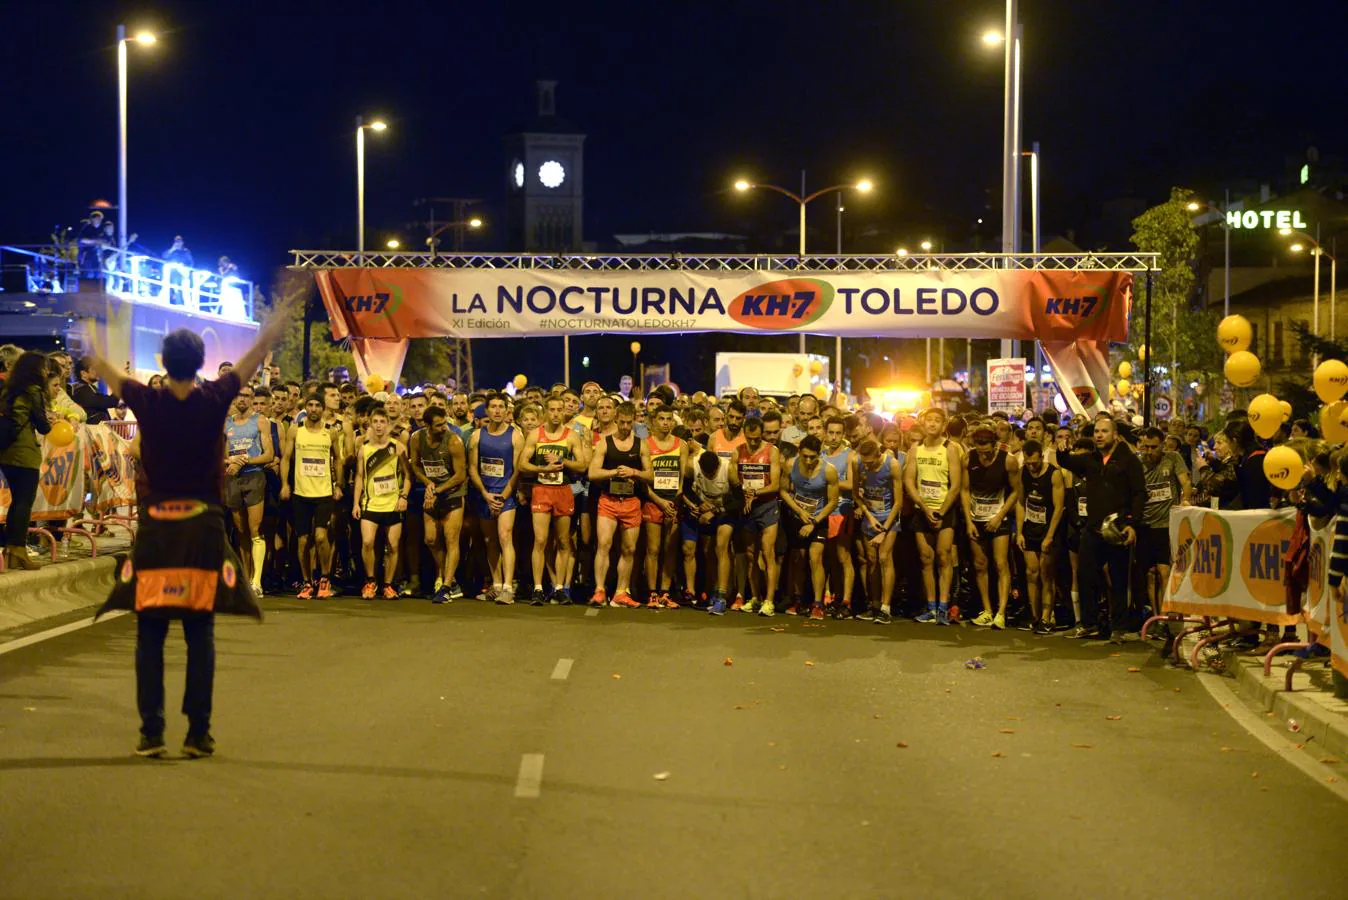 Ricardo Serrano y Sonia Labrado ganan la Nocturna de Toledo